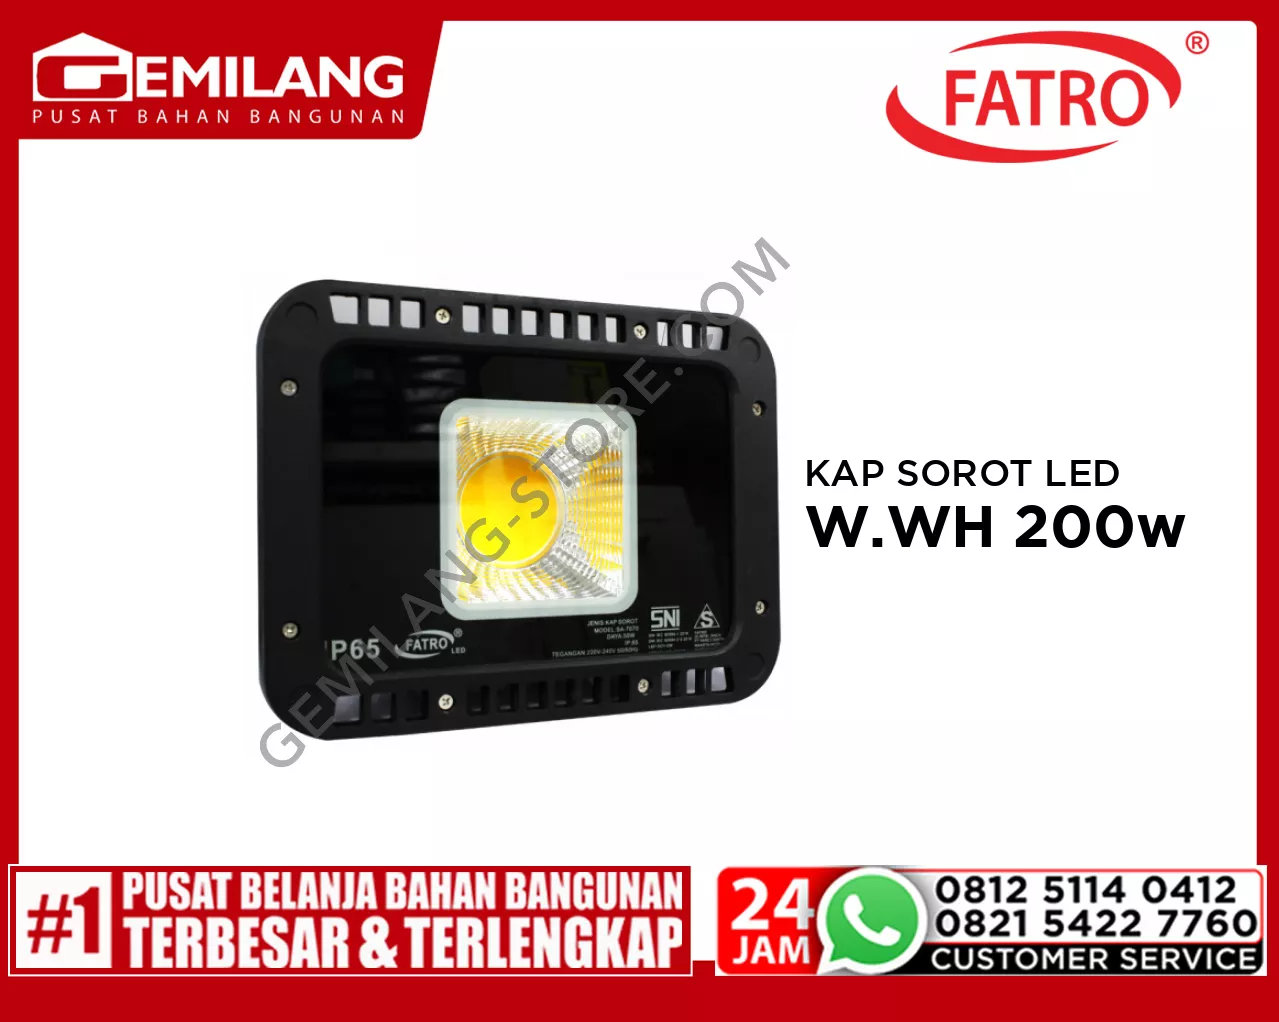 FATRO KAP SOROT LED SA 7070 W.WH 200w